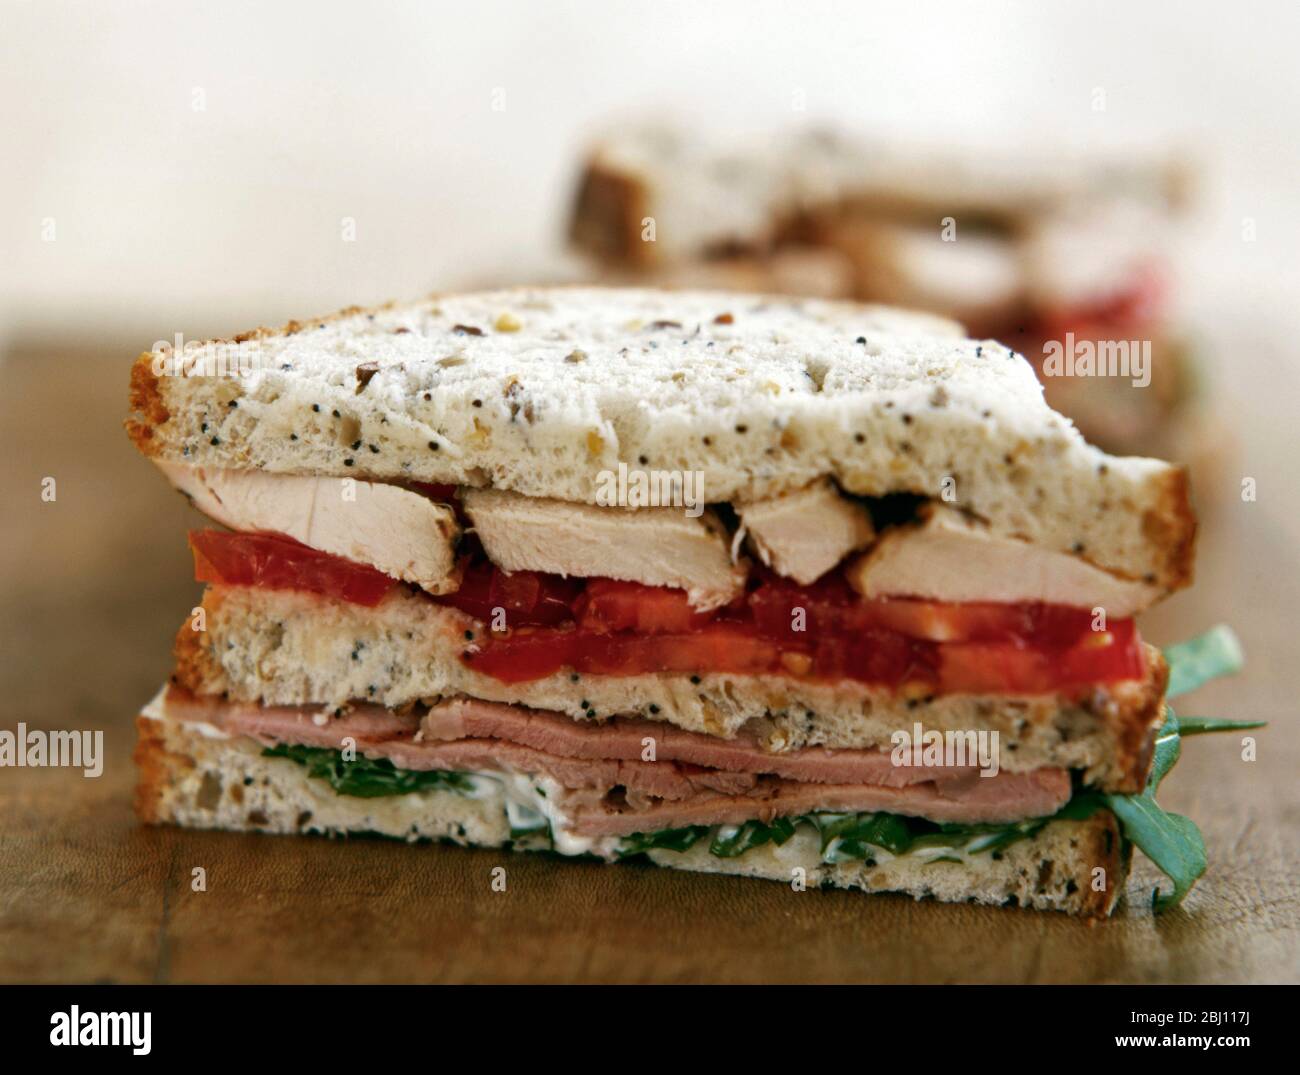 Sandwich de poulet, tomate, jambon et salade sur pain semé - Banque D'Images